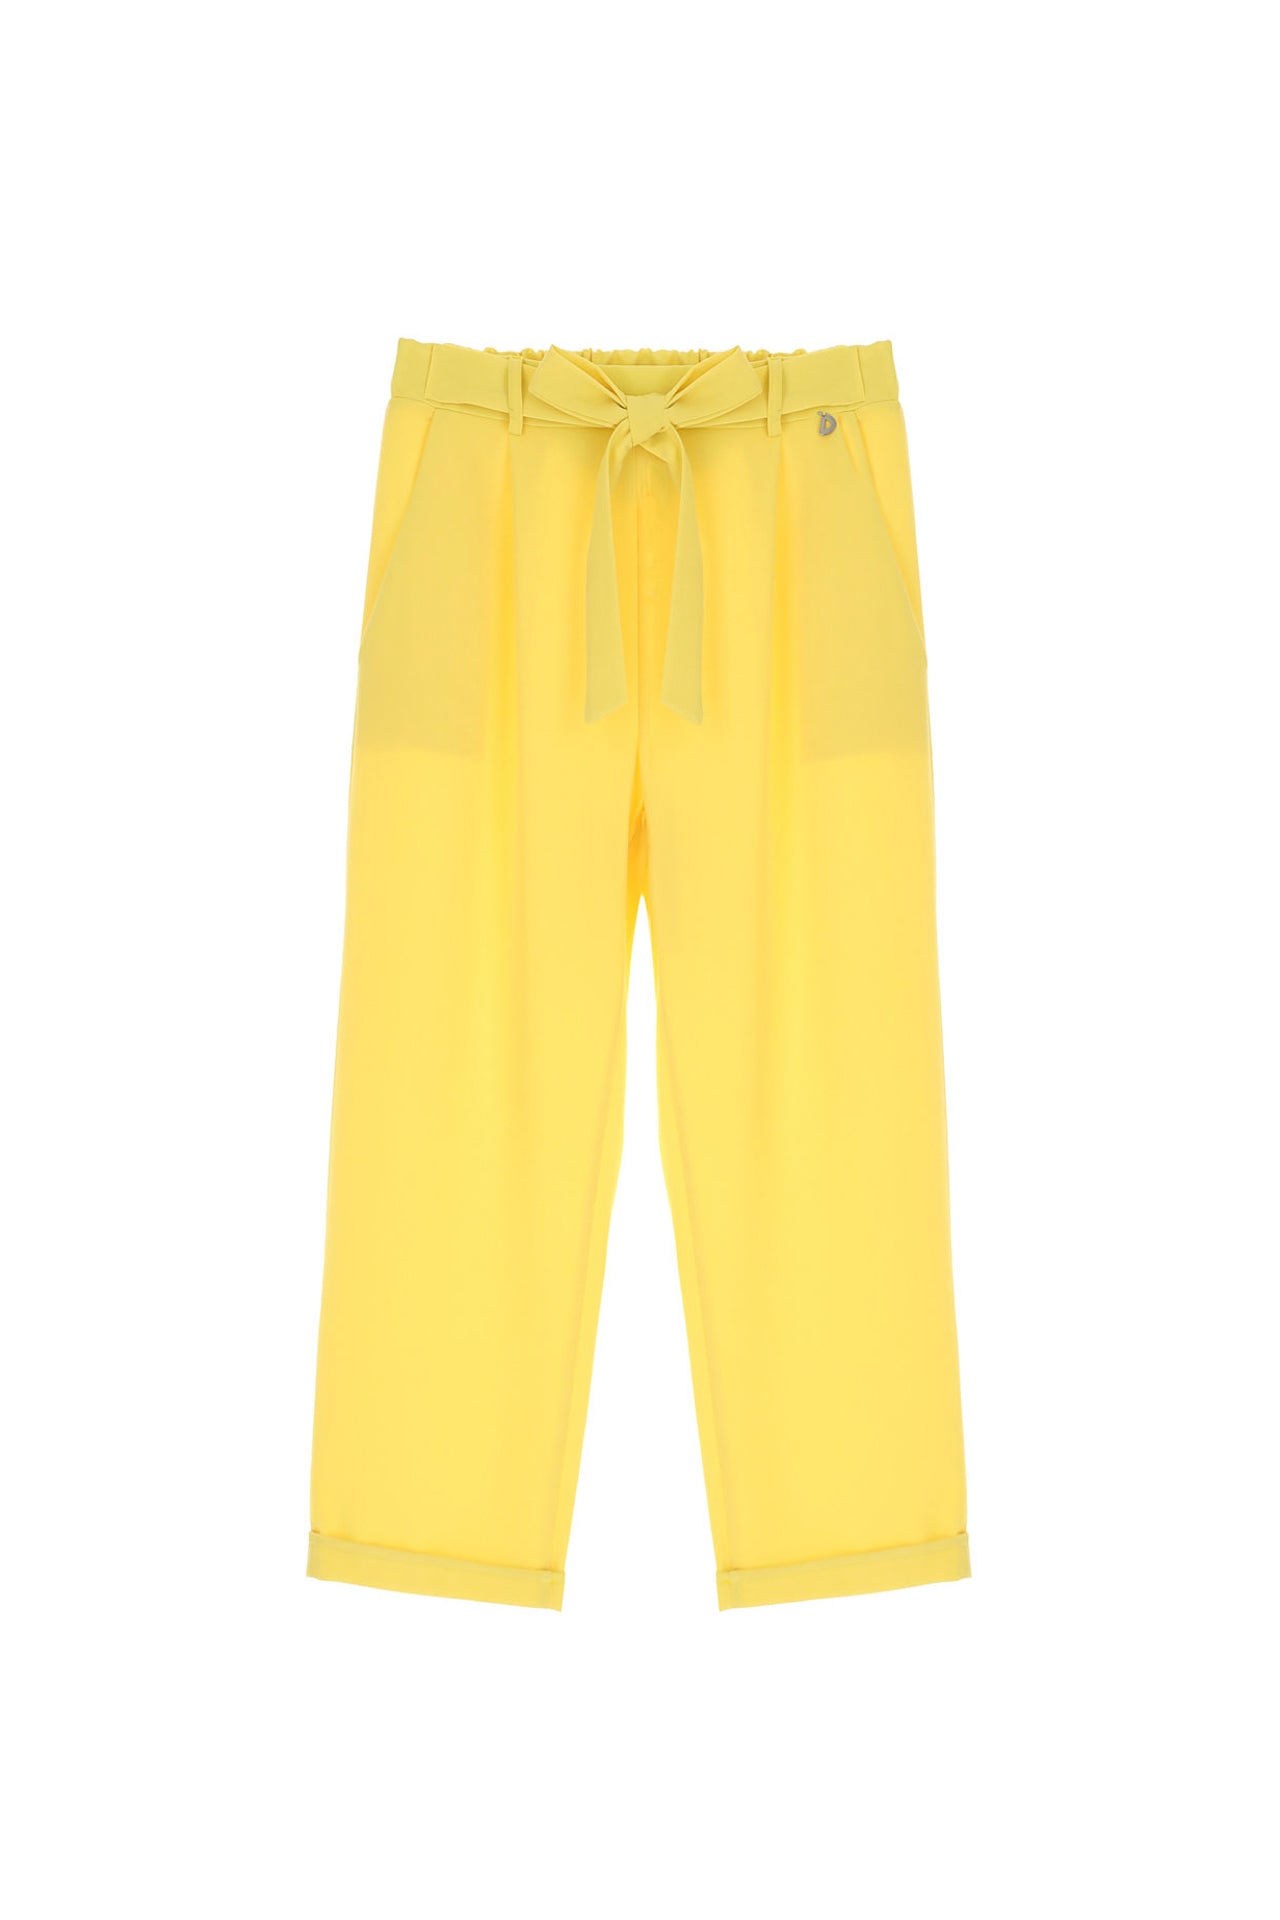 Dixie yellow pants